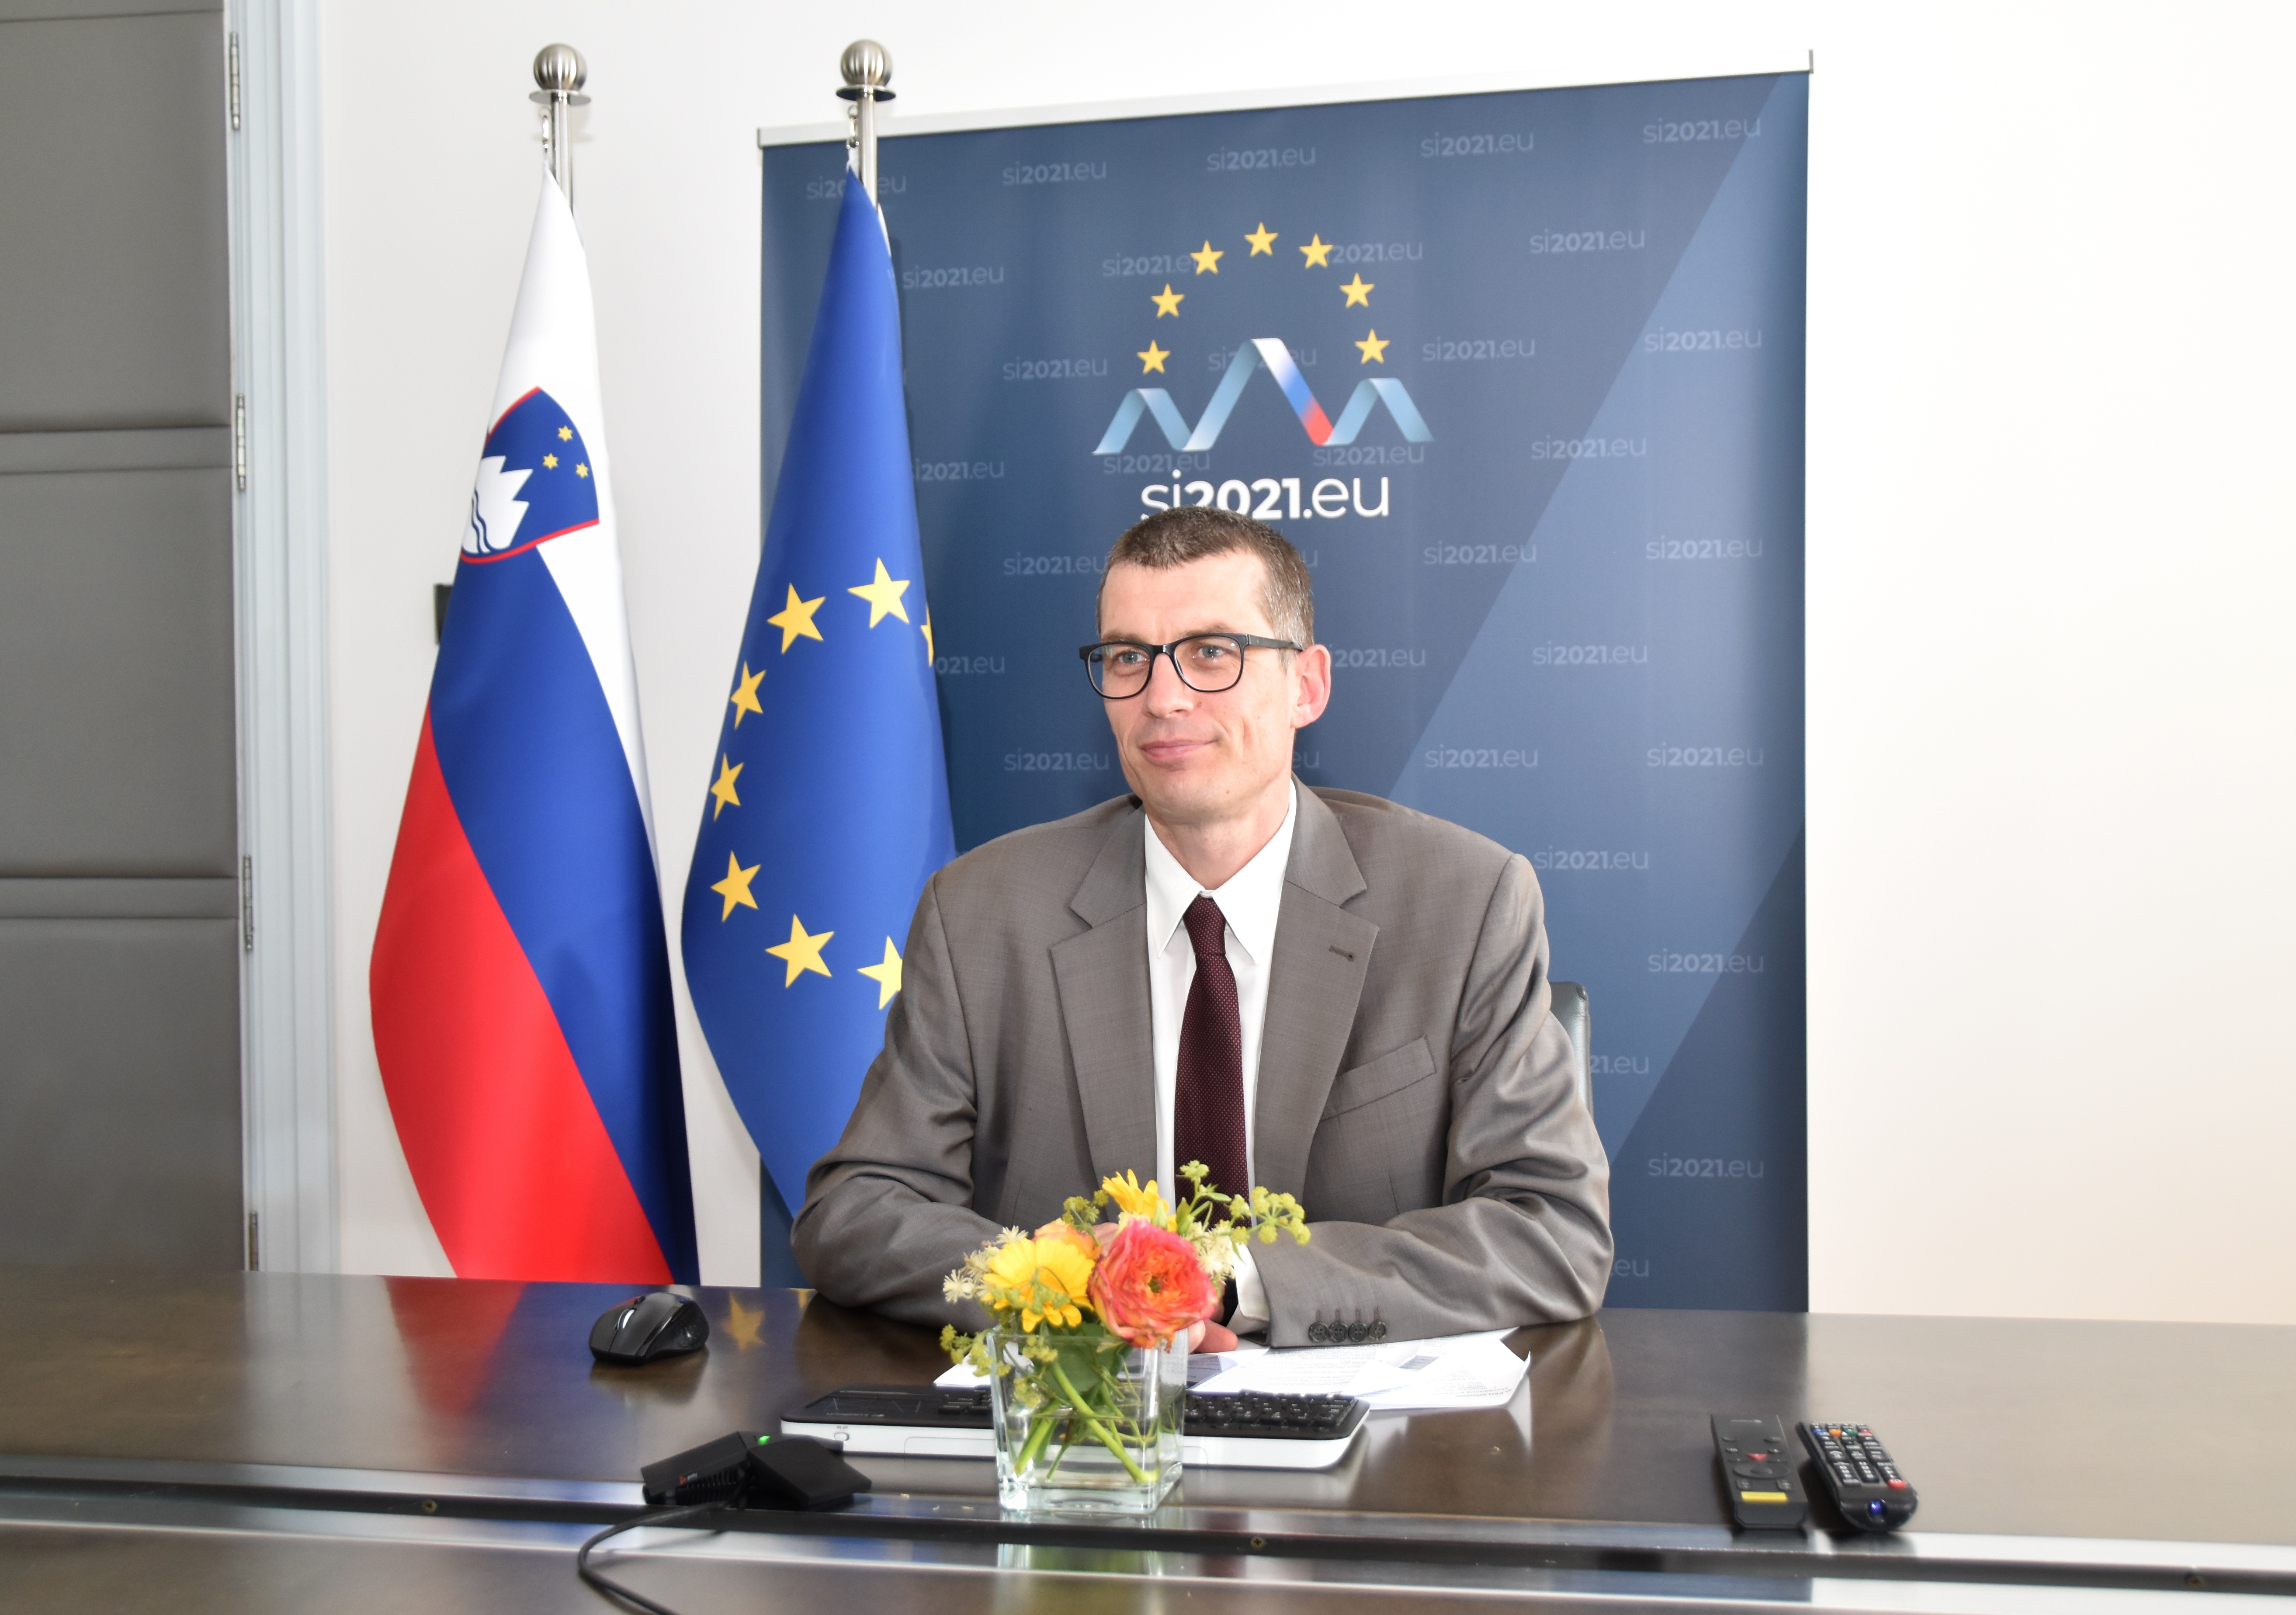 Državni sekretar Tovian se s člani EU pogovarja o prednostnih nalogah slovenskega predsedovanja